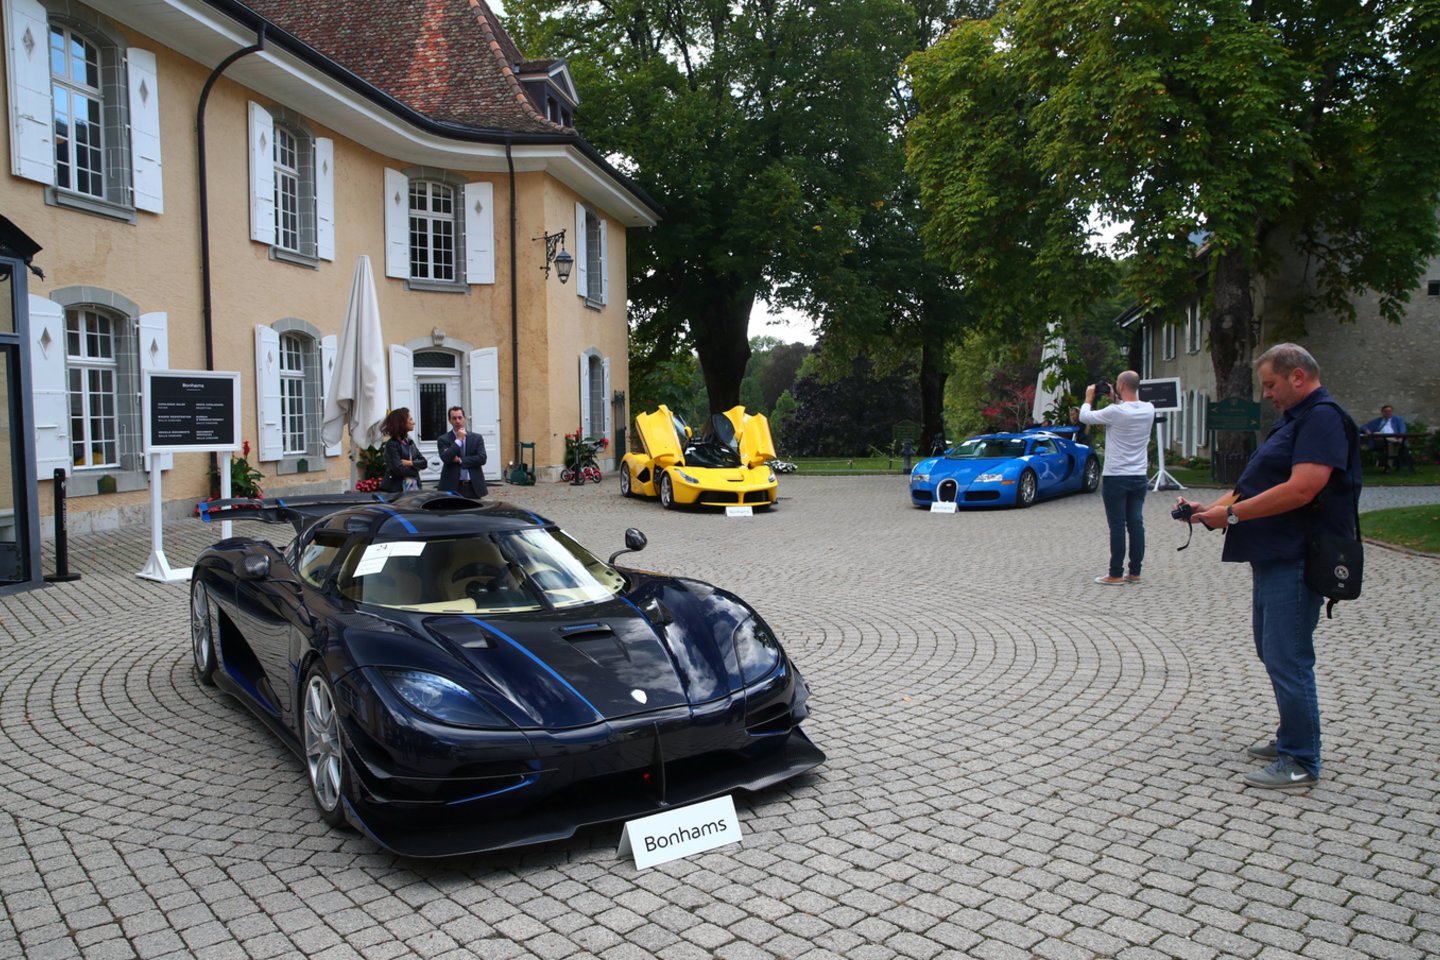 Per aukcioną pirkėjams siūlomi, be kita ko, septyni automobiliai „Ferrari“, trys „Lamborghini“, penki „Bentley“, vienas „Maserati“ ir vienas „McLaren“.<br>Reuters/Scanpix nuotr.